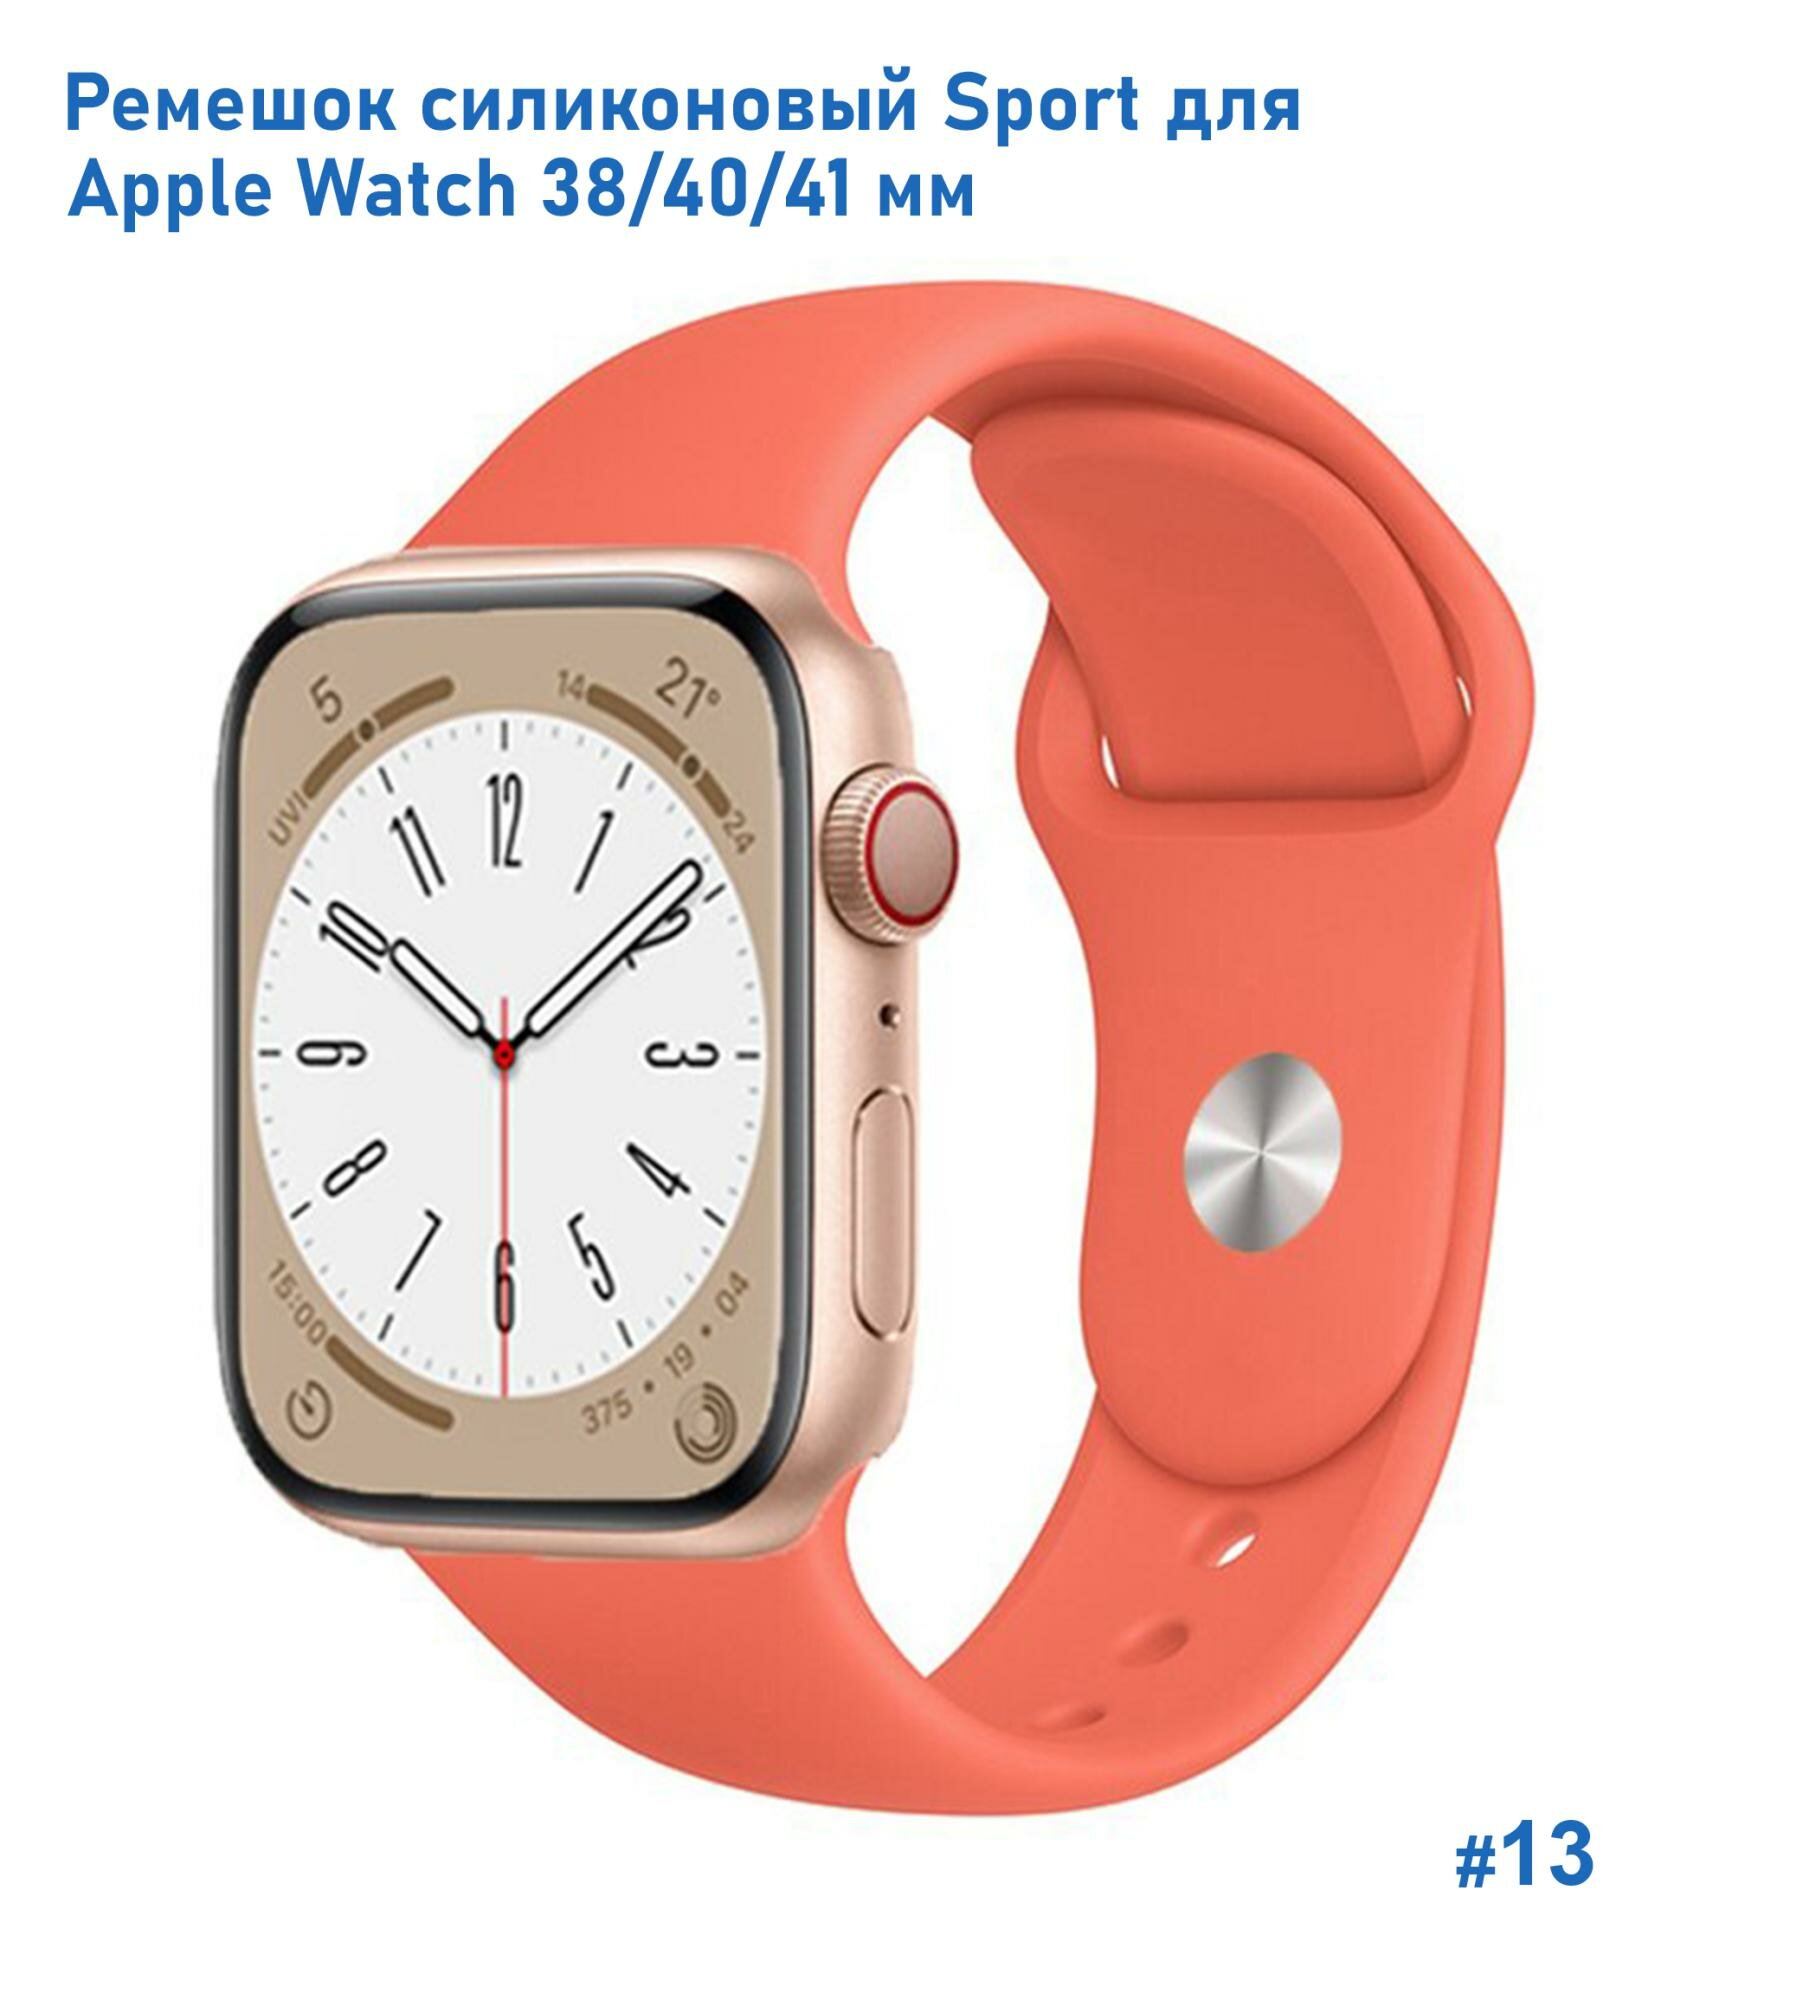 Ремешок силиконовый Sport для Apple Watch 38/40/41 мм, на кнопке, оранжевый (13)